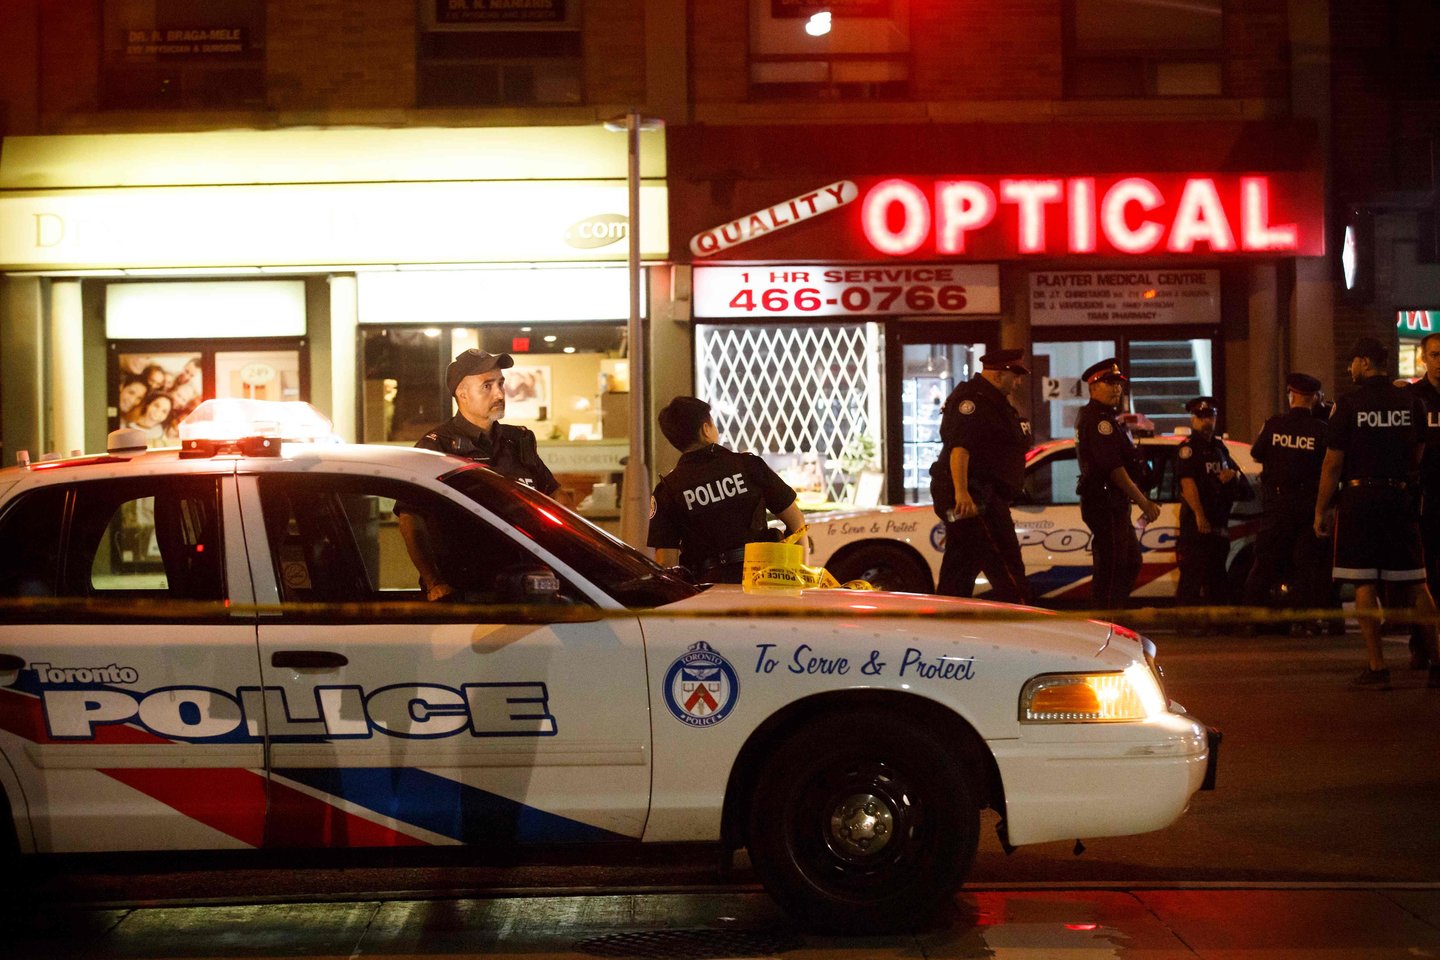  Kanados didžiausiame Toronto mieste sekmadienį vakare šaudė užpuolikas – sužeisti devyni žmonės, įskaitant vaiką, pranešė policija.<br> AFP/Scanpix nuotr.